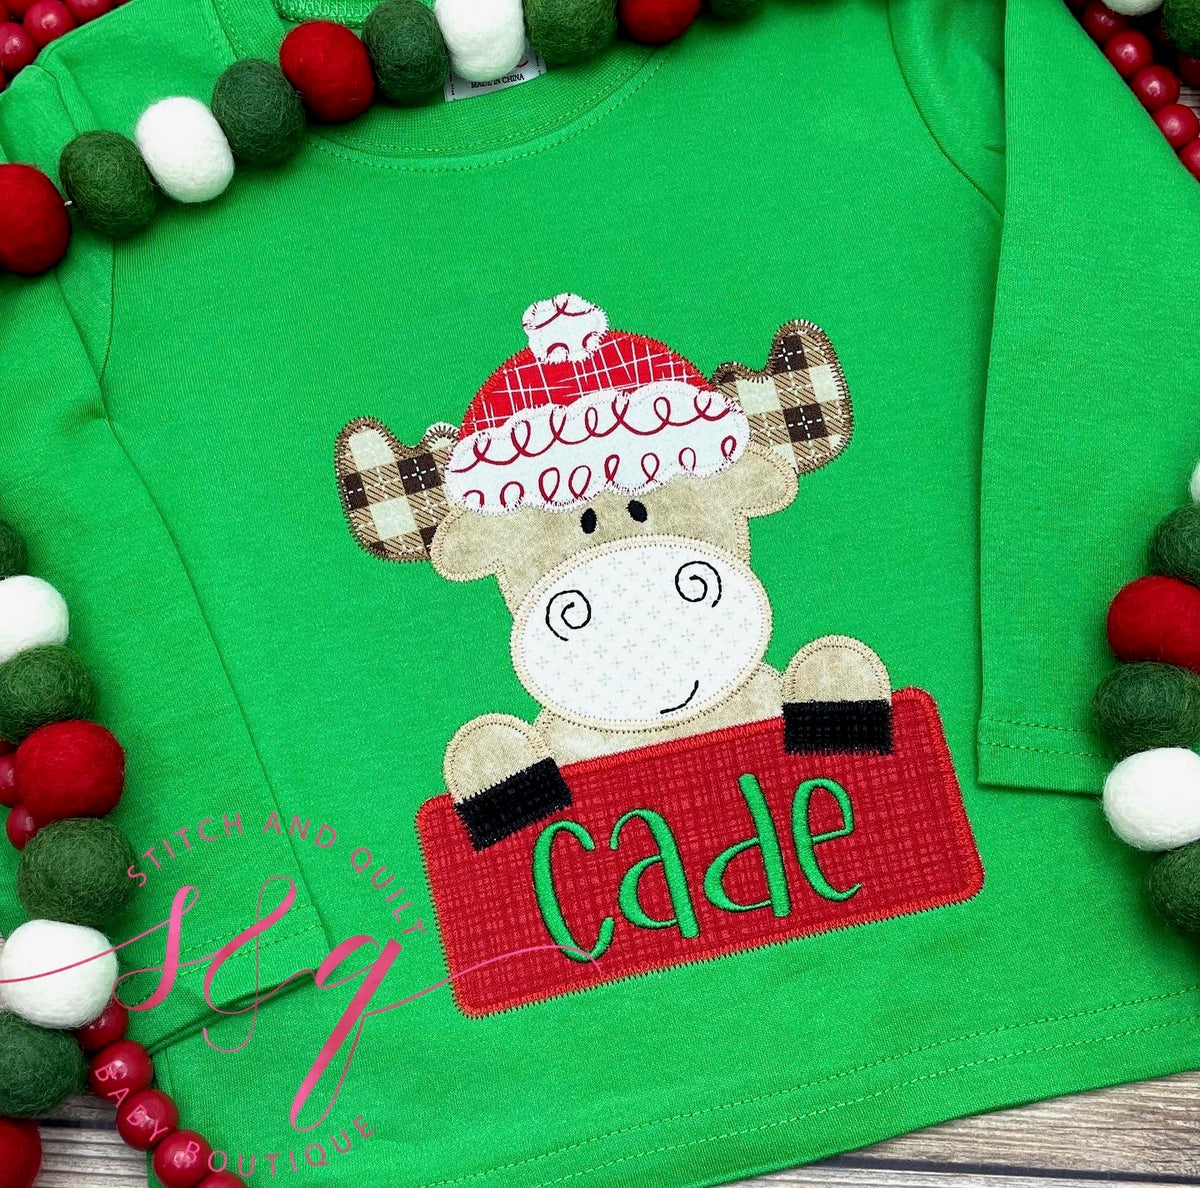 Boys Toddler and Infant Christmas Shirt, Holiday shirt for boys, Christmas shirt for boys